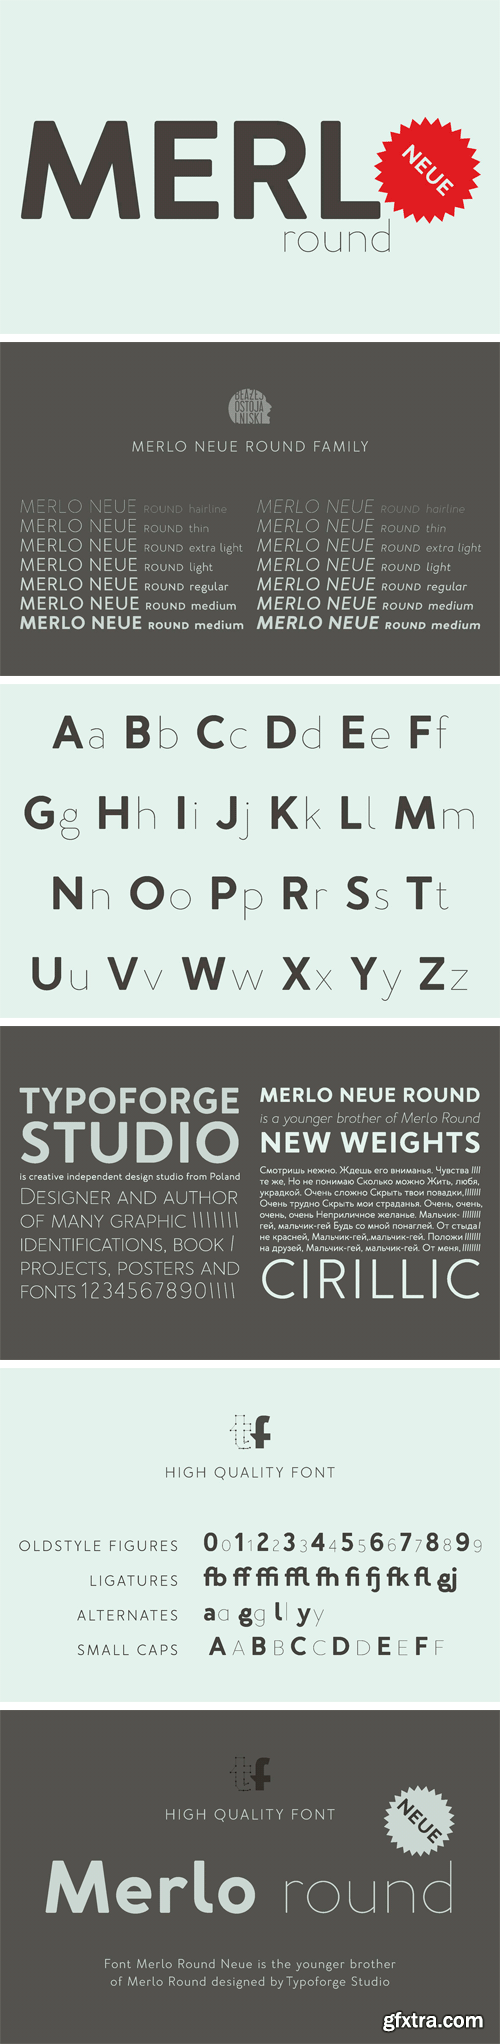 Merlo Neue Round Font Family